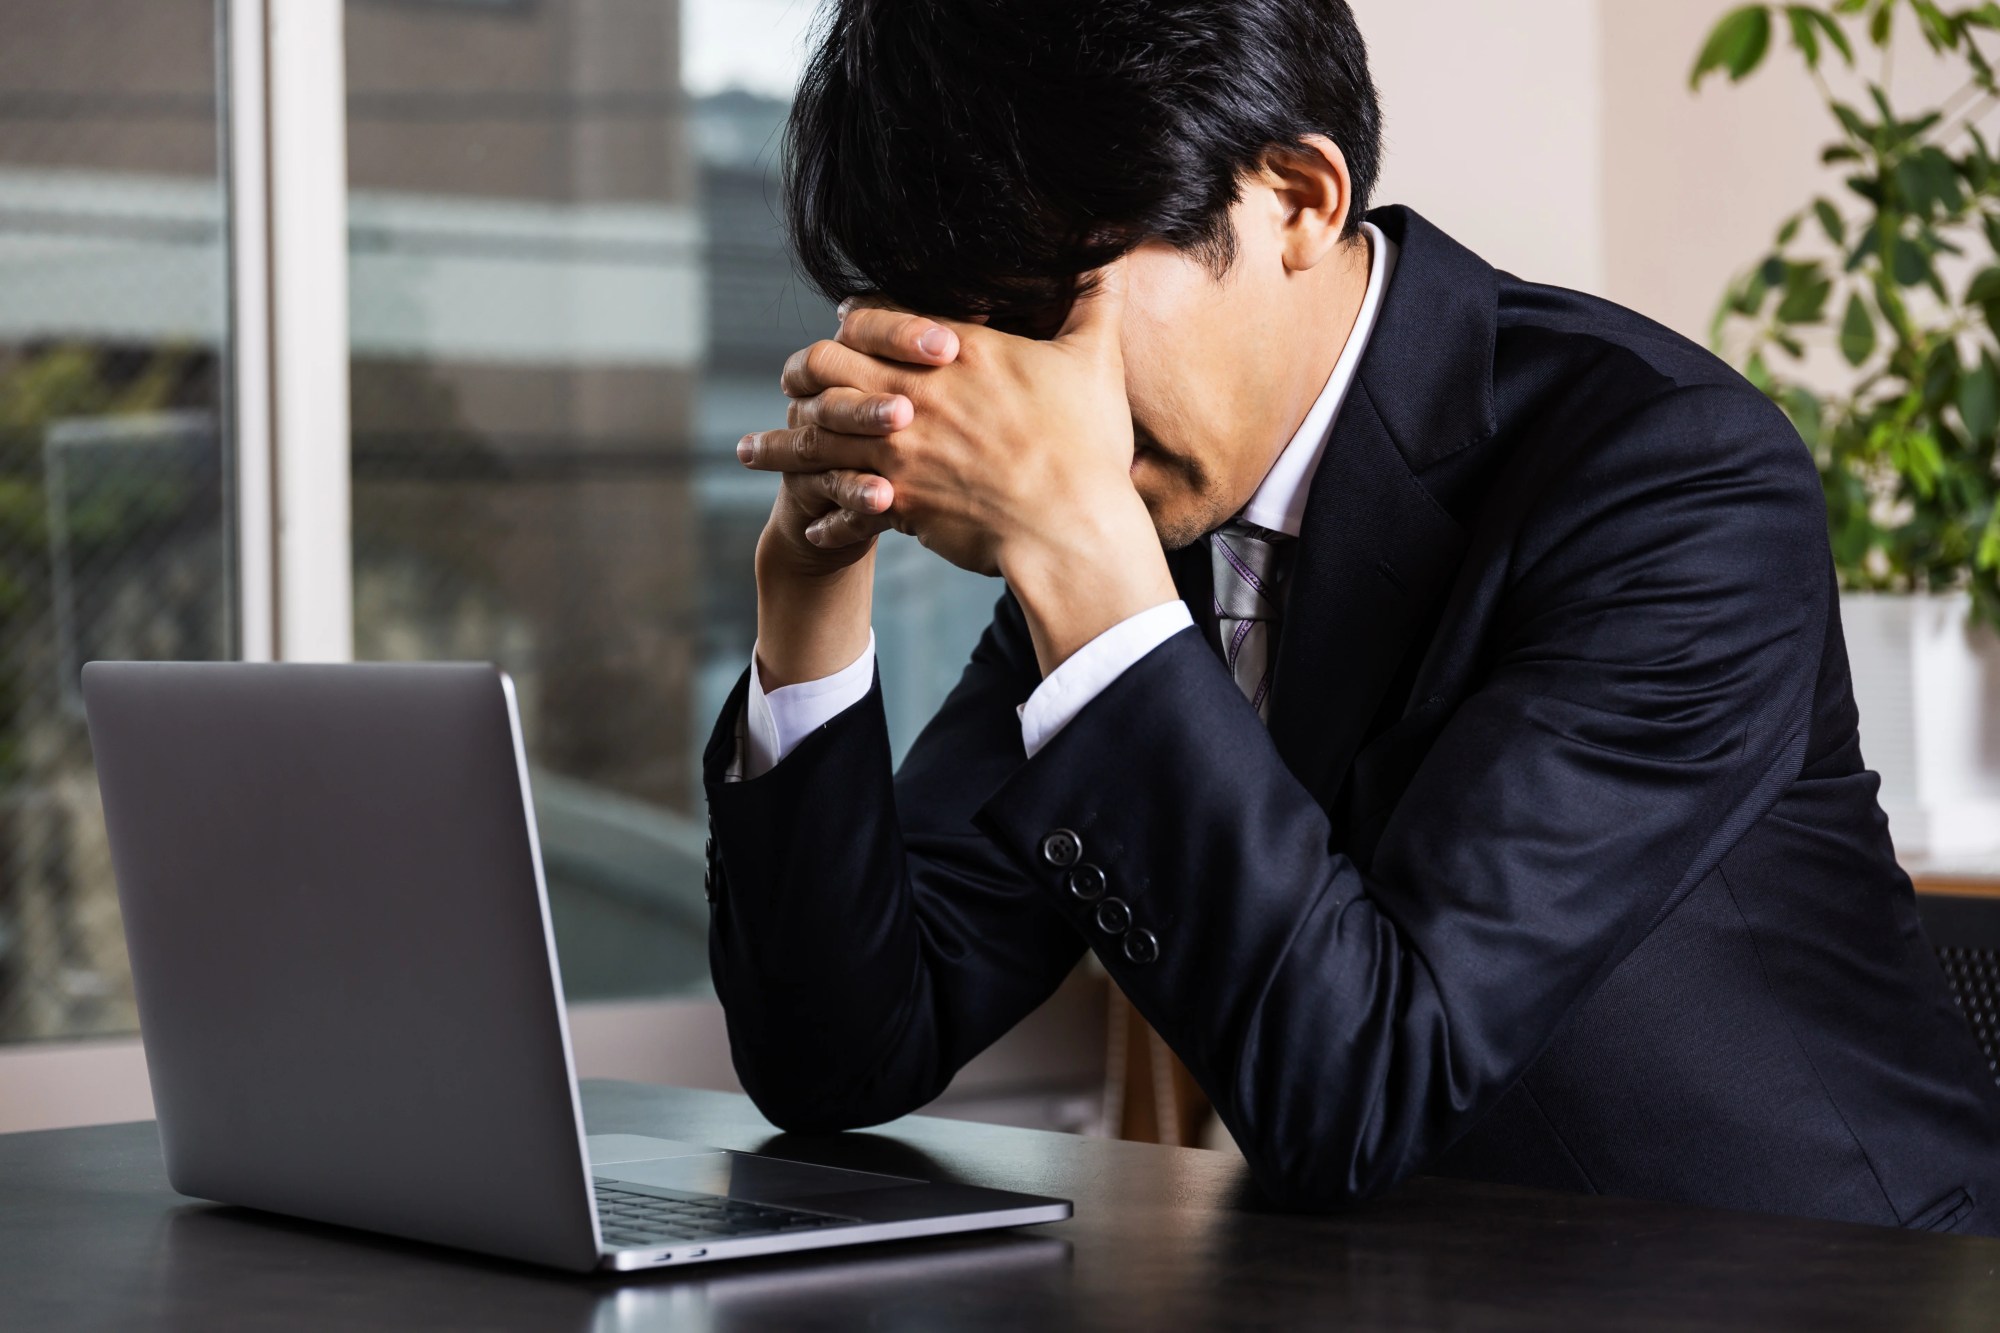 「疲労」のイメージ_パソコンの前で顔を覆い俯く男性